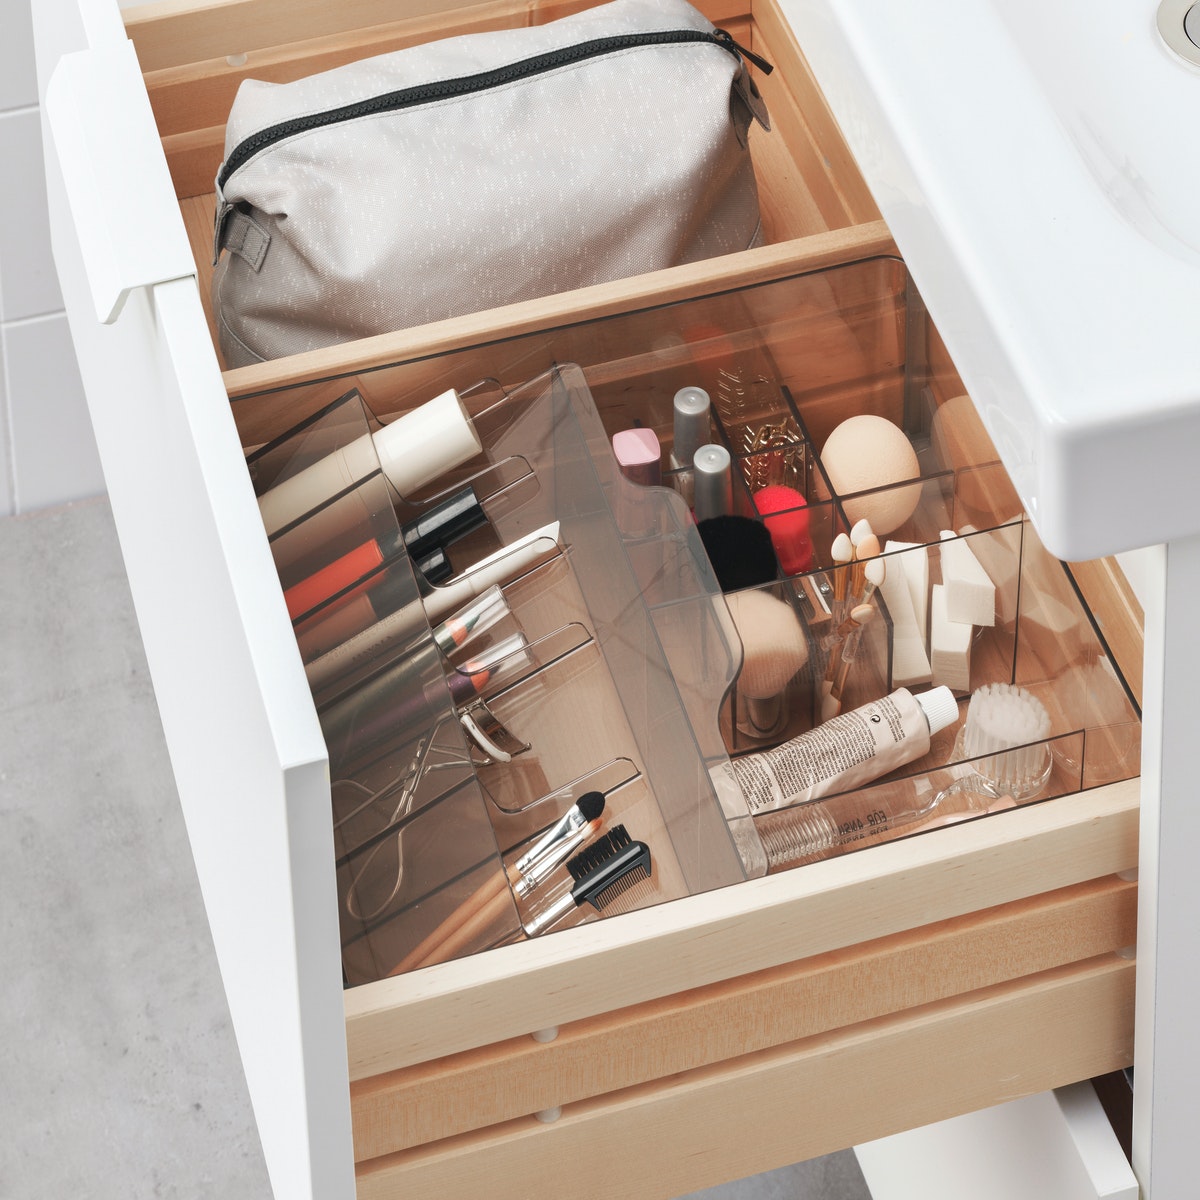 Simak 5 Rekomendasi Hadiah Valentine Cocok untuk Decluttering dari IKEA